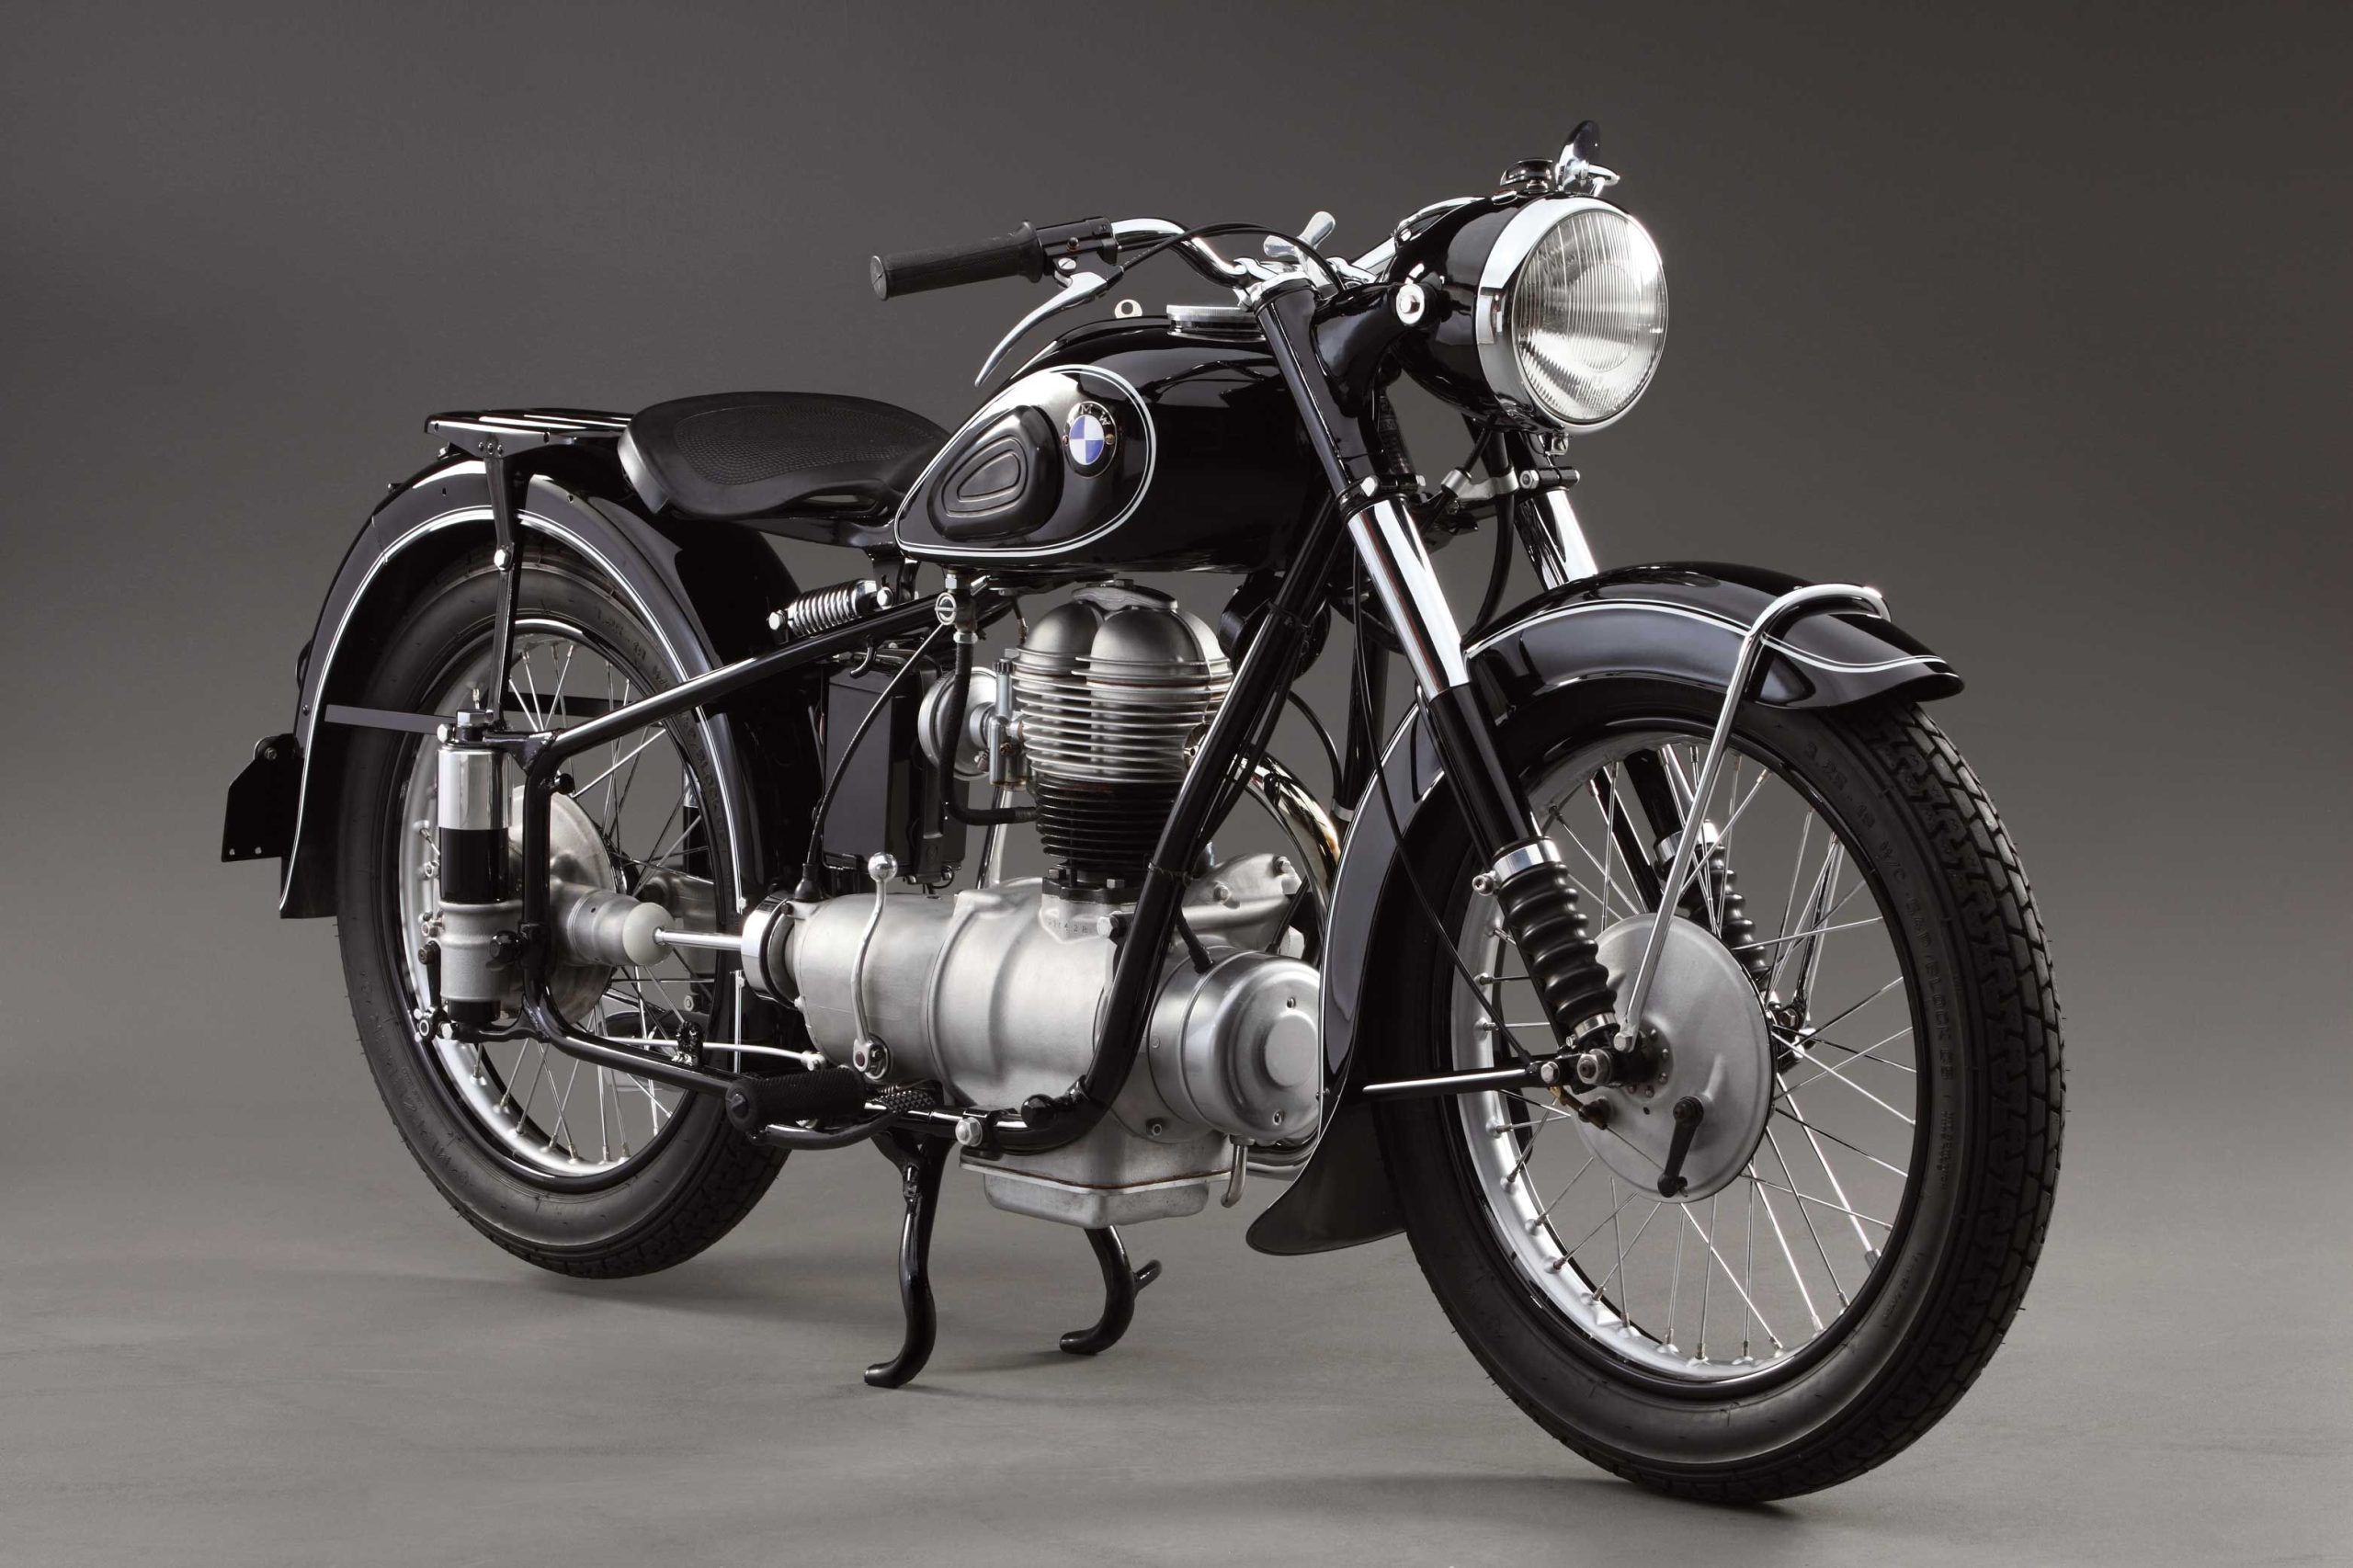 Vintage Motorcycles: Nostalgia on Two Wheels